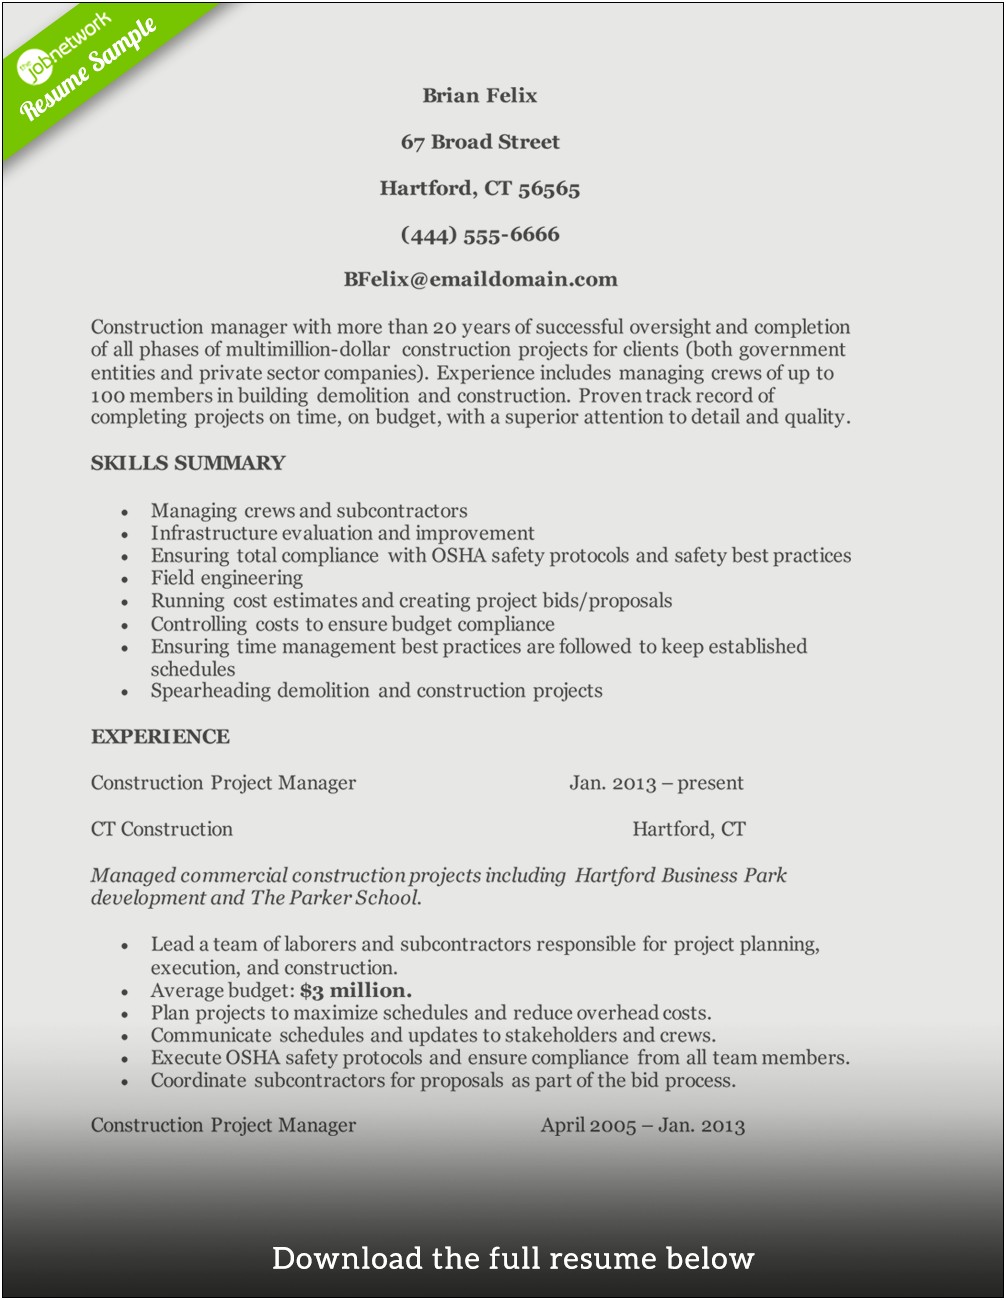 Landscaping Crew Leader Job Description For Resume